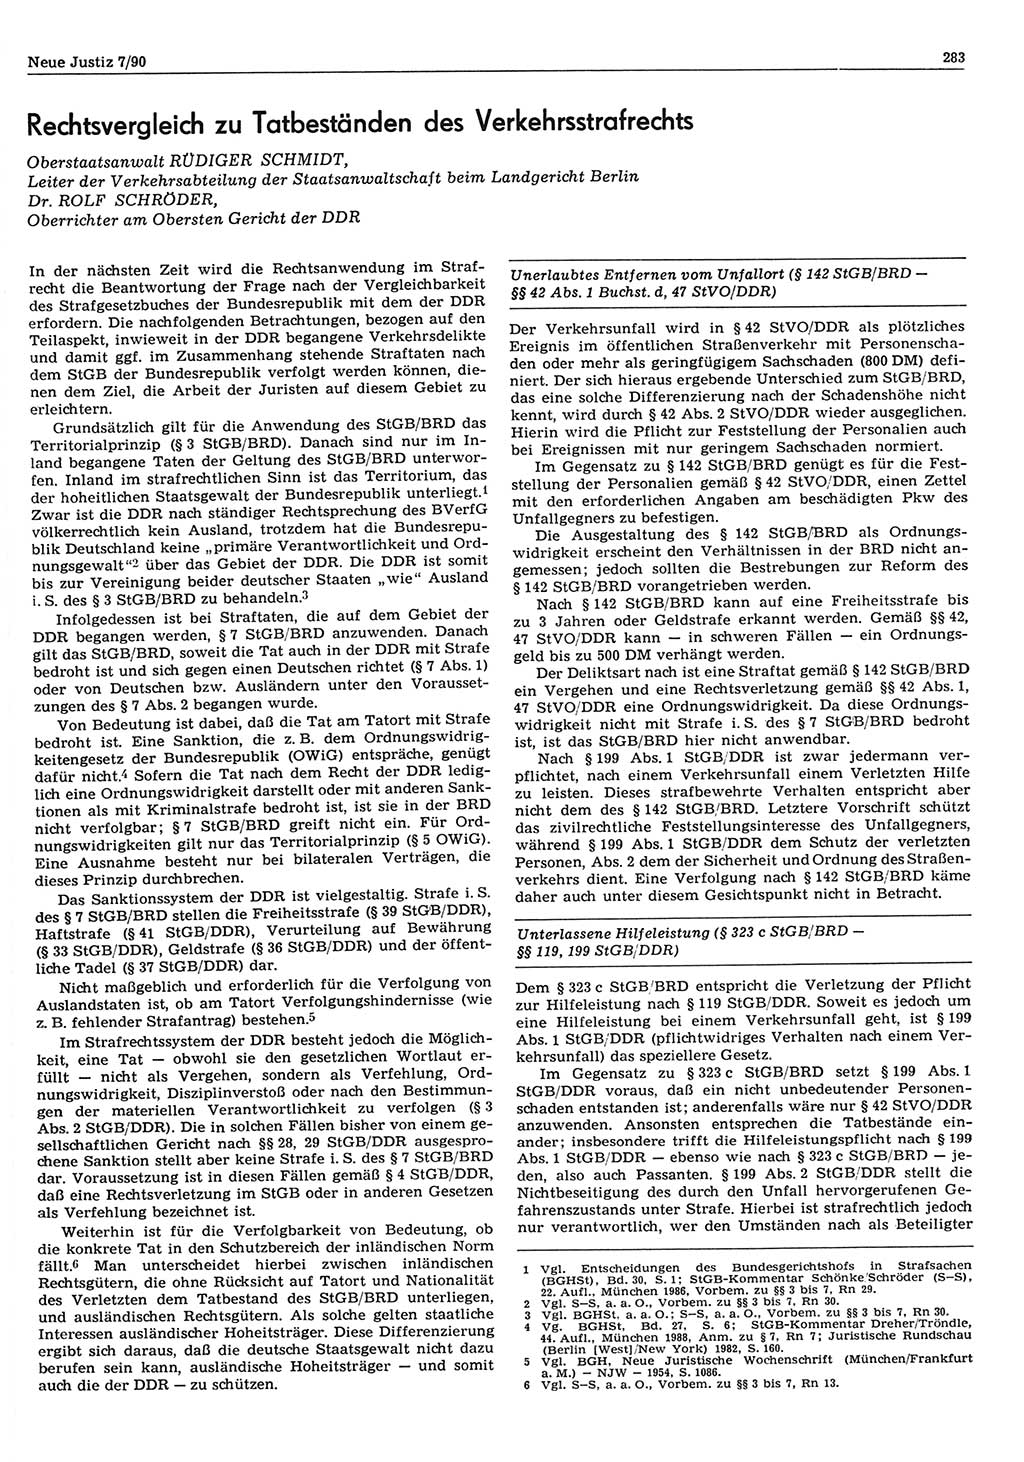 Neue Justiz (NJ), Zeitschrift für Rechtsetzung und Rechtsanwendung [Deutsche Demokratische Republik (DDR)], 44. Jahrgang 1990, Seite 283 (NJ DDR 1990, S. 283)